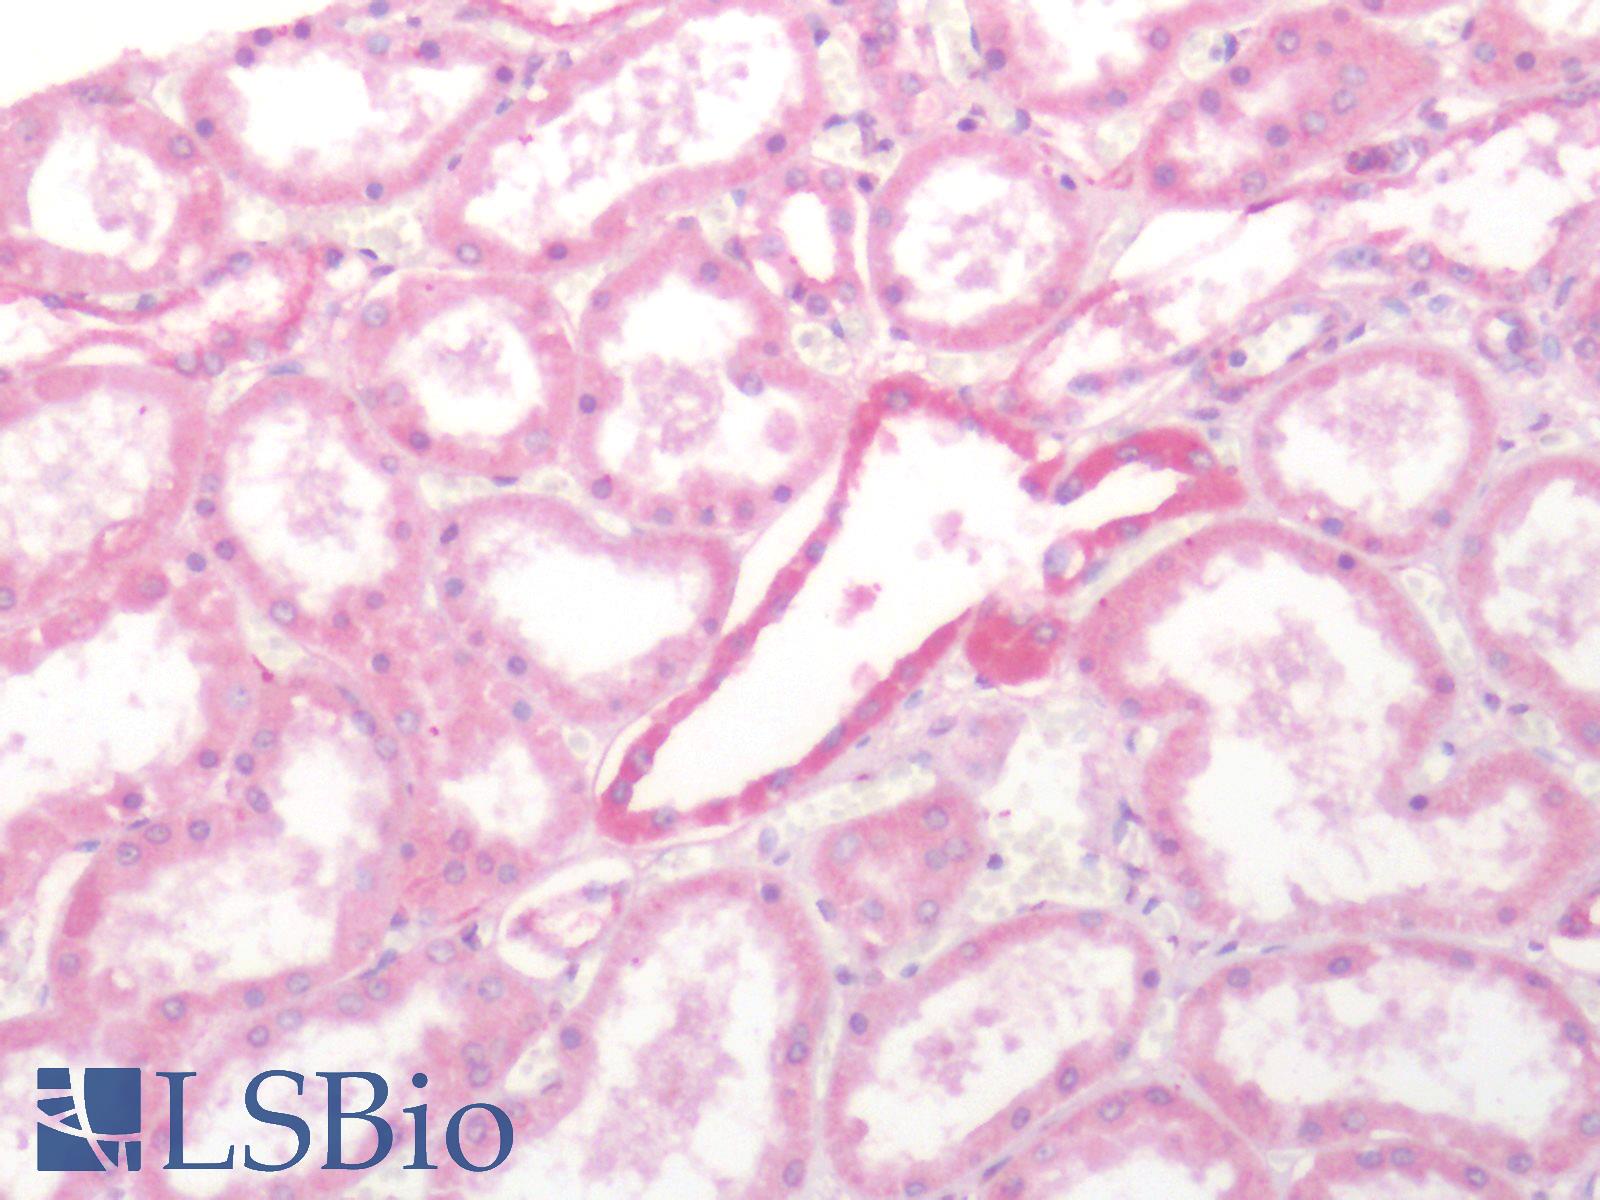 SSTR2 Antibody - Human Kidney: Formalin-Fixed, Paraffin-Embedded (FFPE)